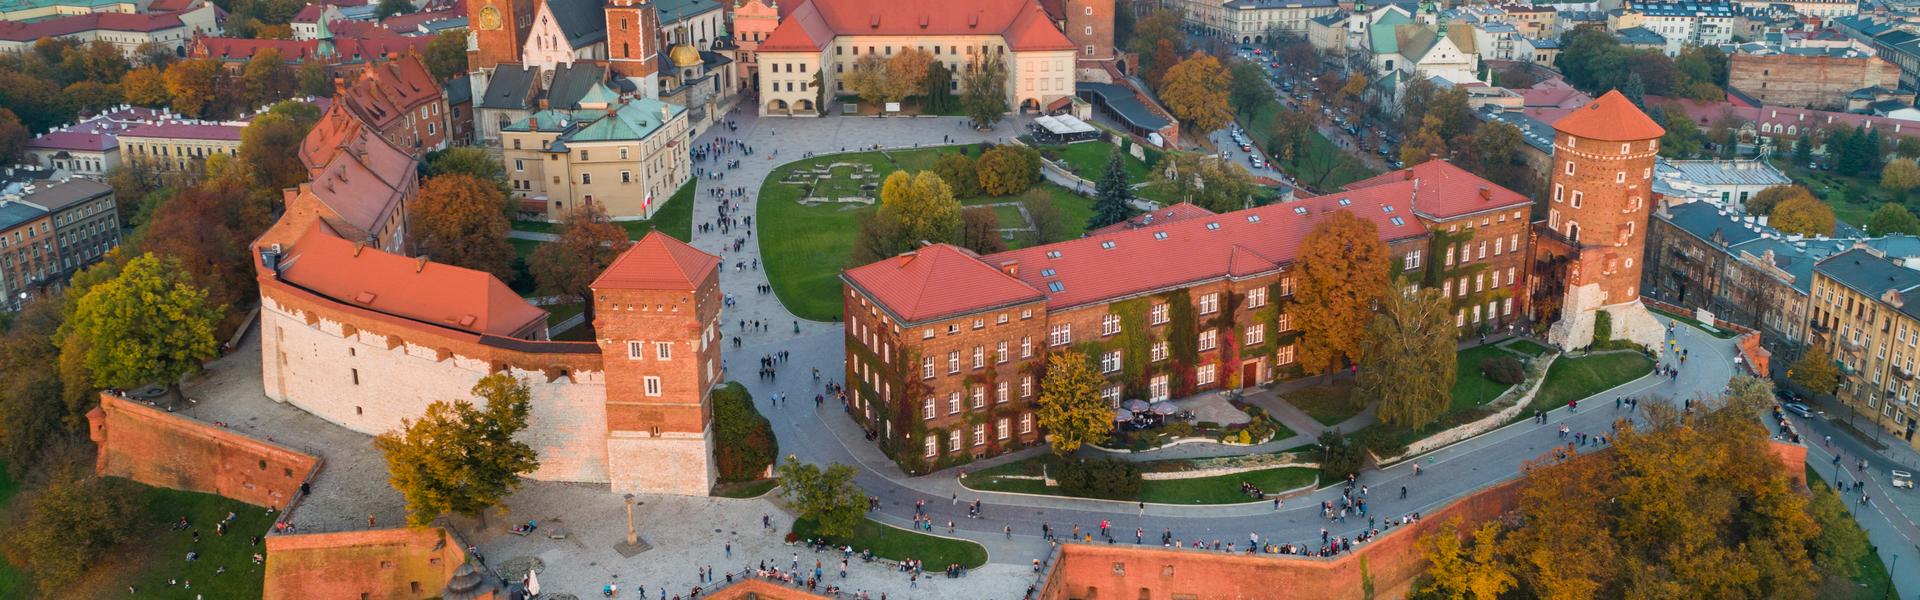 Königsschloss Wawel in Krakau. Luftaufnahme des Schlosshofes und der das Schloss umgebenden Mauern. Es gibt einen Blick auf die Stadt um einen Baum in der Ferne.